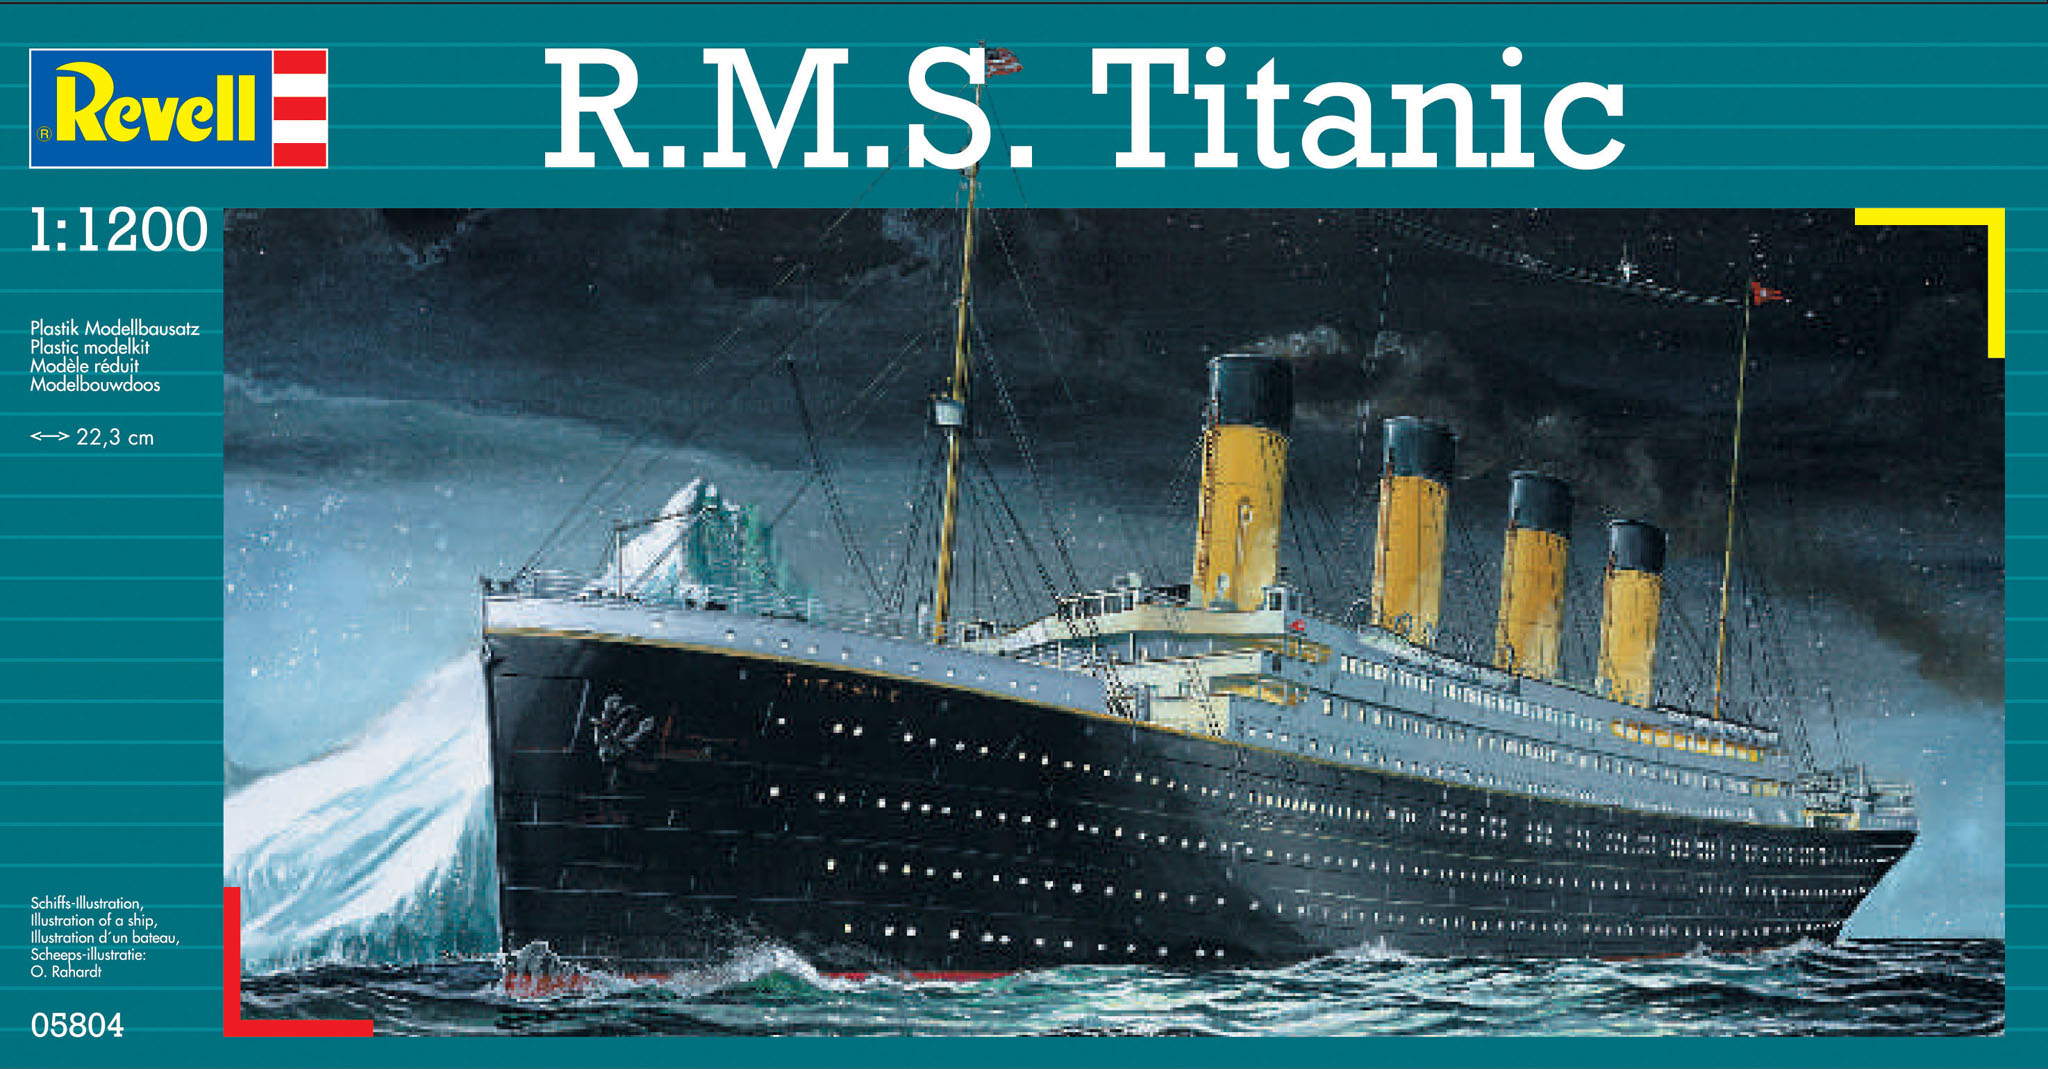 R.M.S. Titanic - 05804